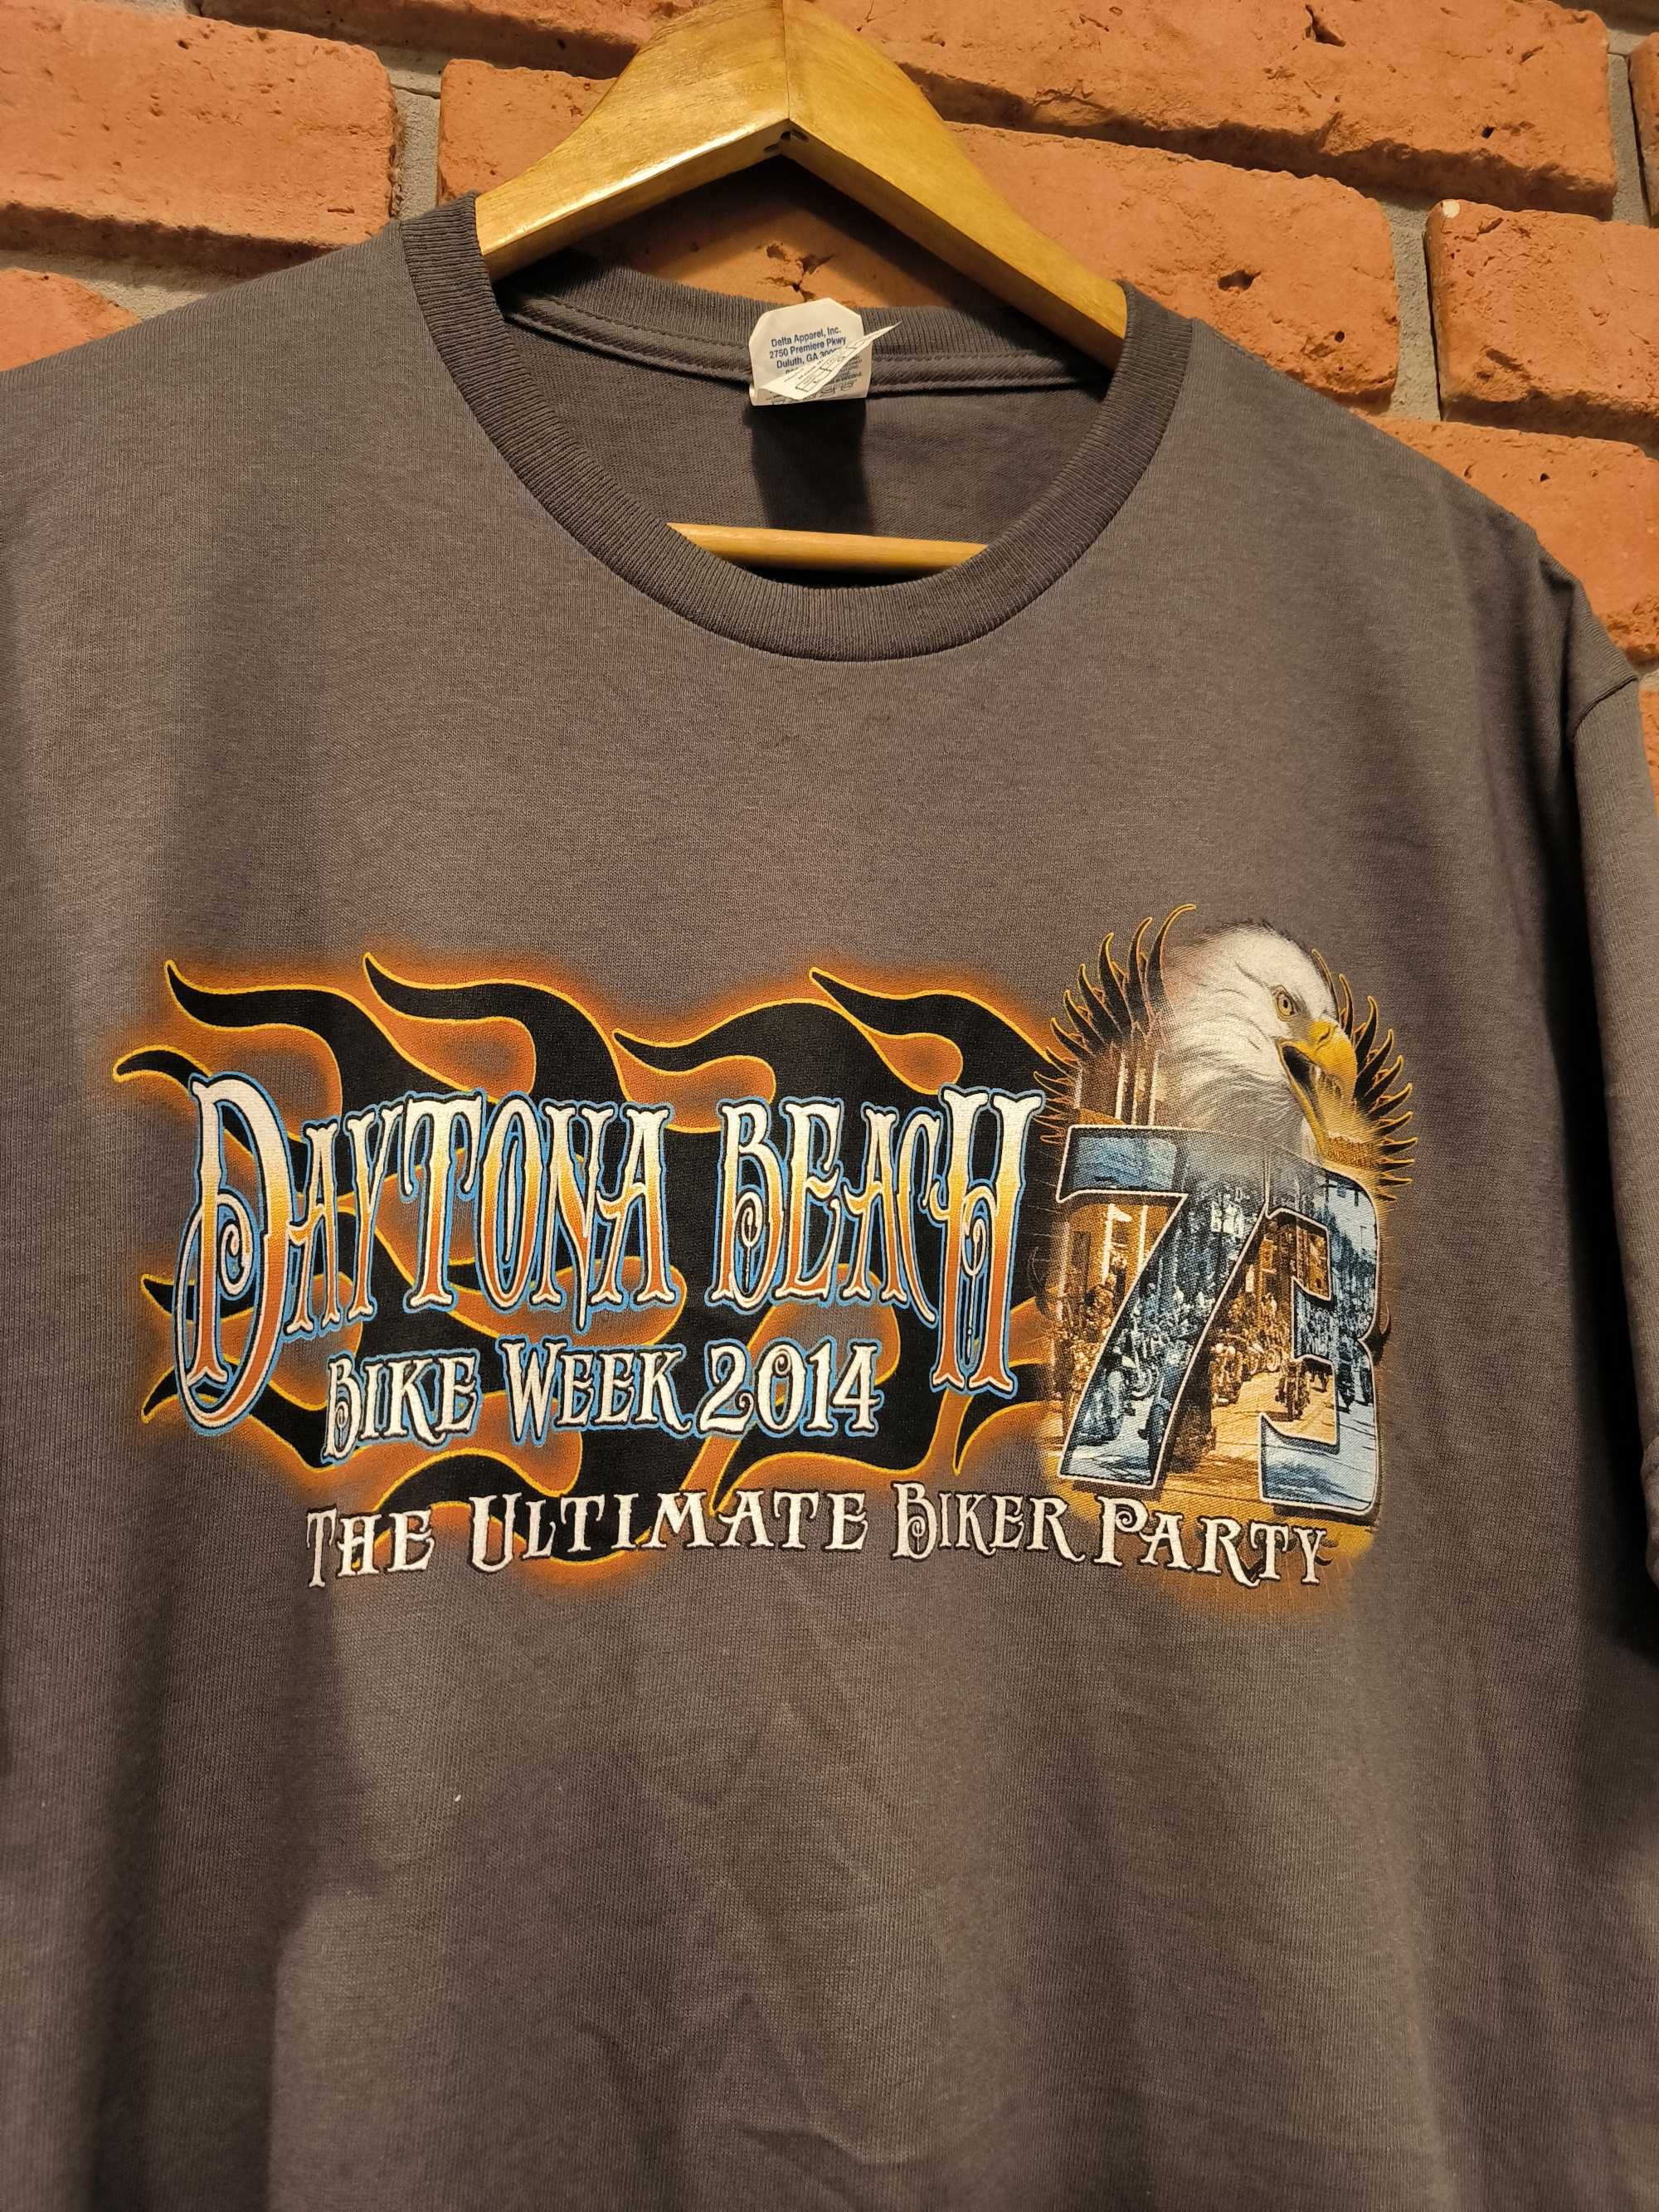 Koszulka Daytona Beach T-Shirt Motocykle Harley Davidson Bike